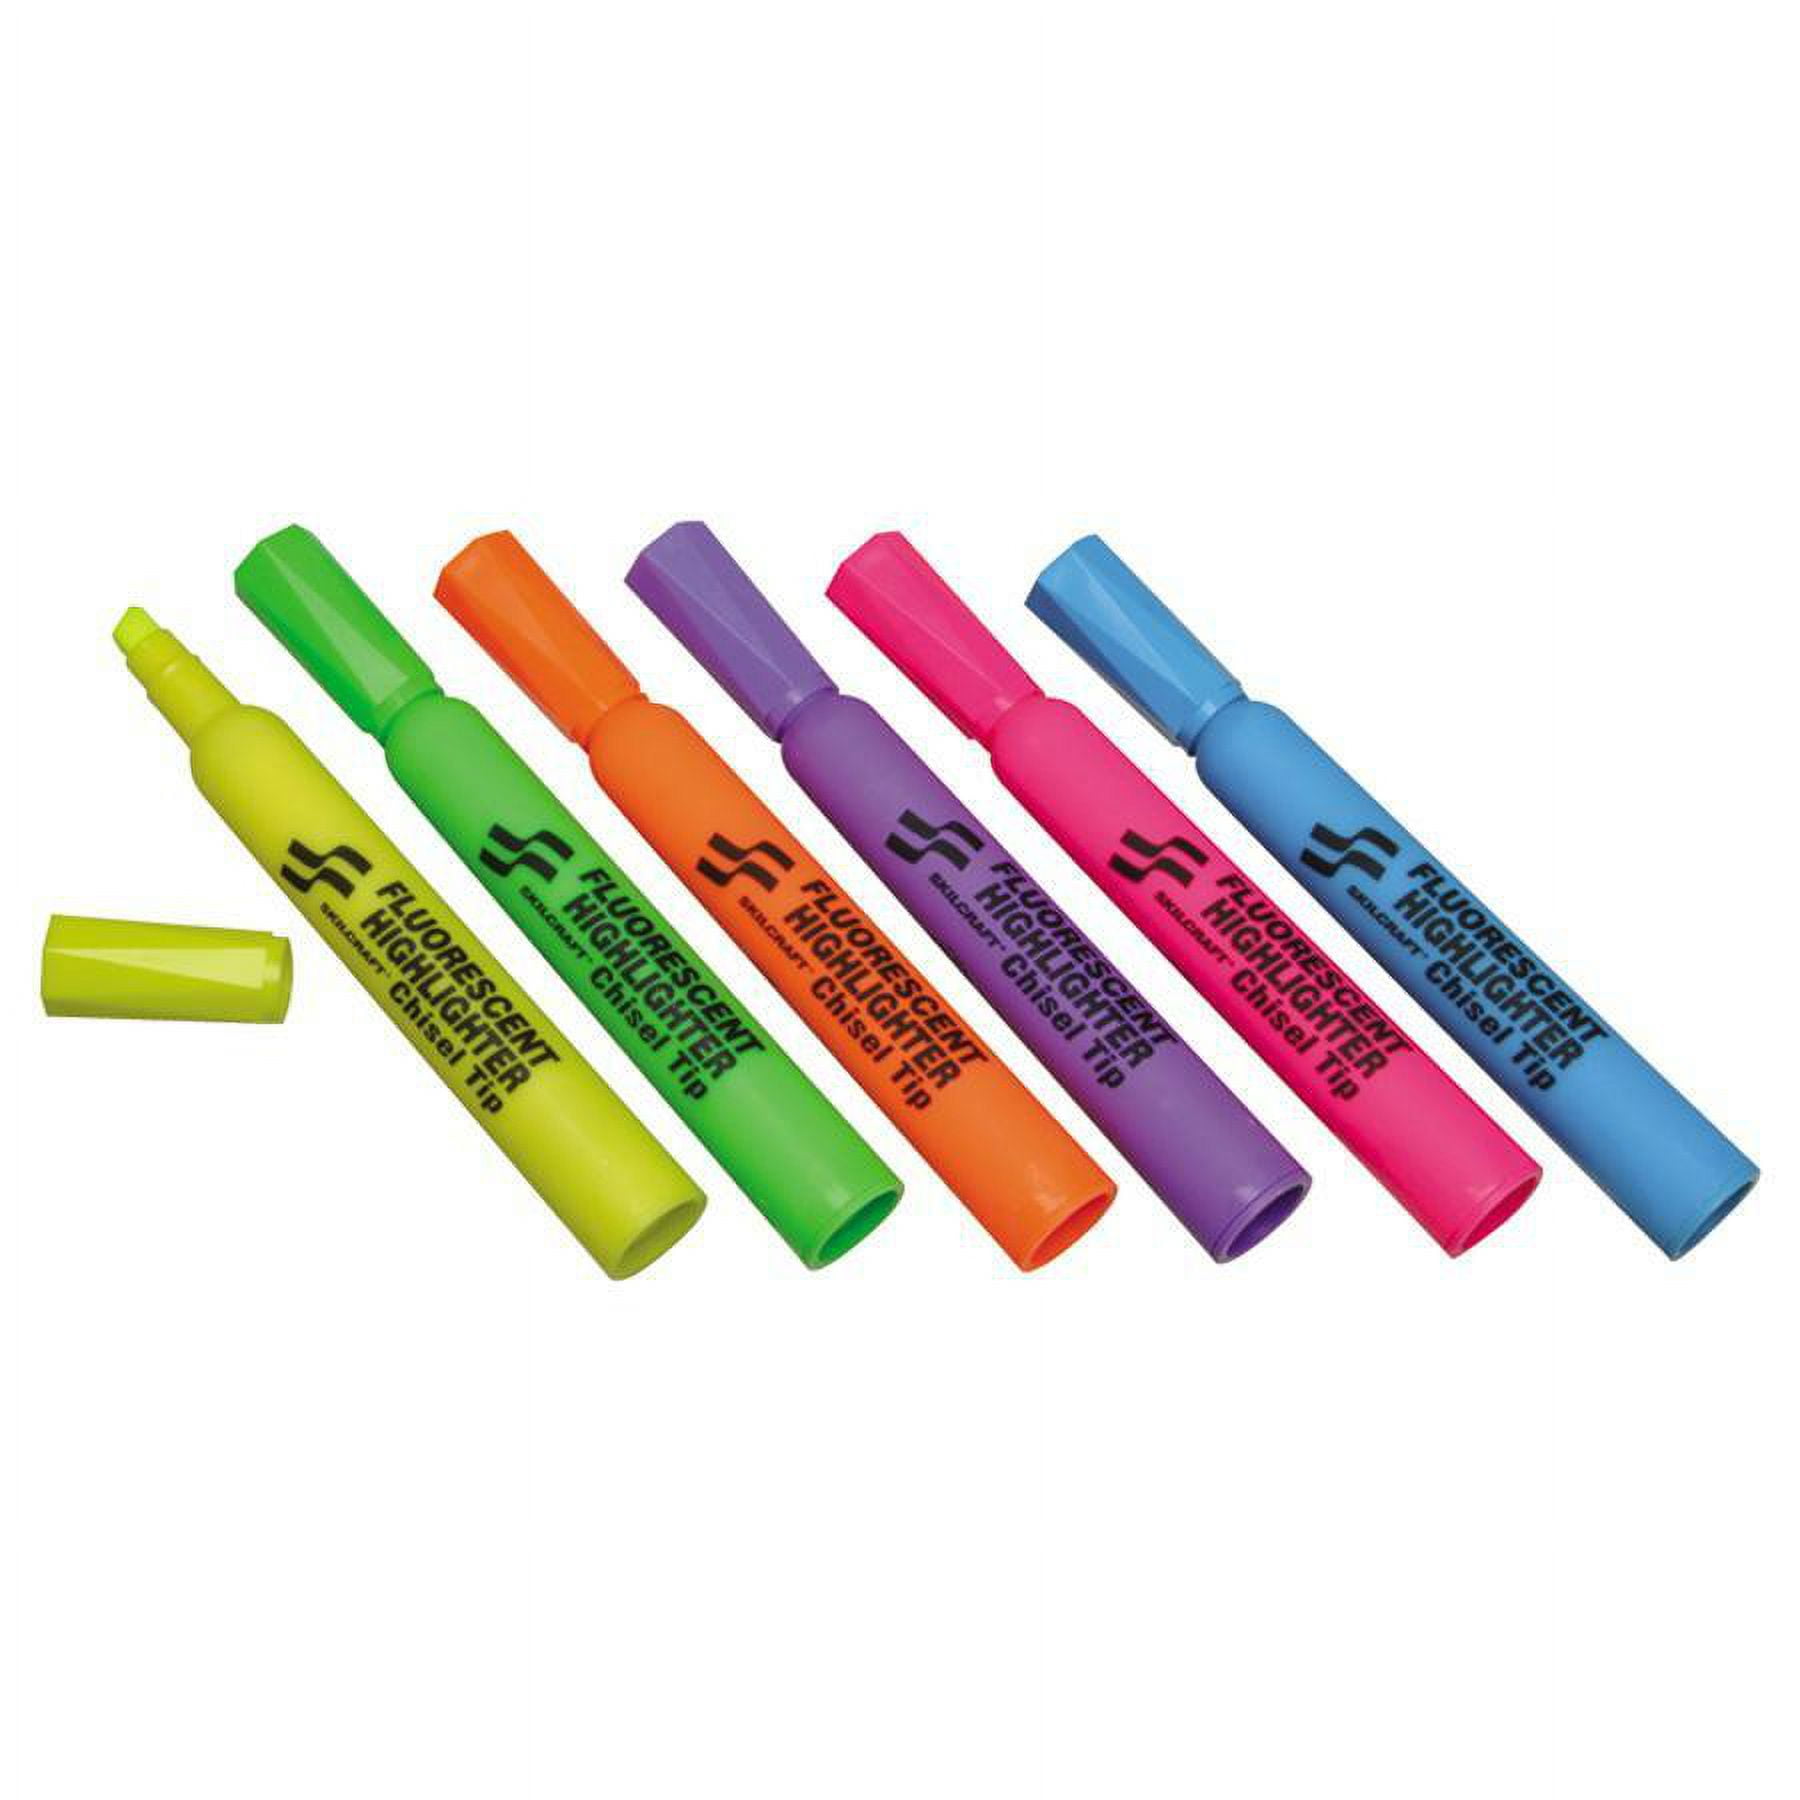 7520016919223 SKILCRAFT Gel Highlighter, Assorted Ink Colors, Chisel Tip,  Assorted Barrel Colors, 5/Pack - ASE Direct